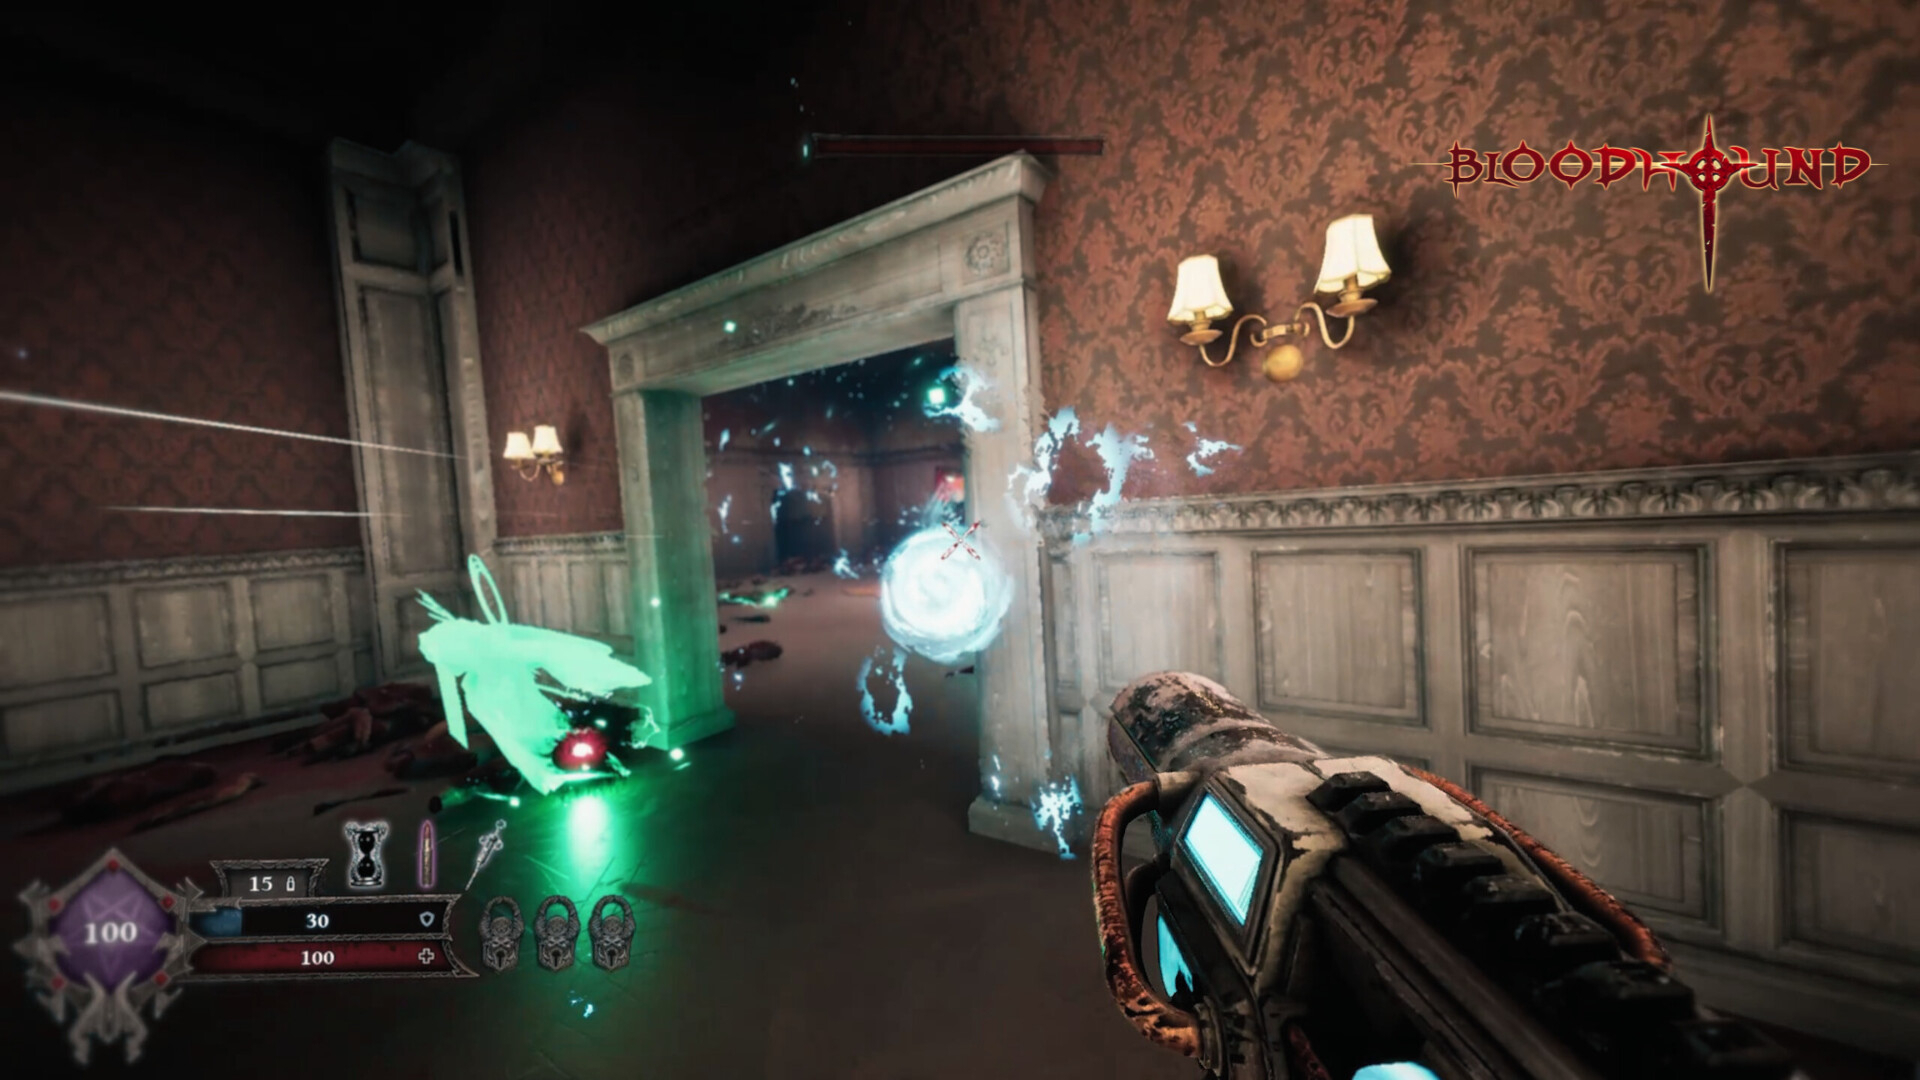 Скриншот из игры Bloodhound под номером 7